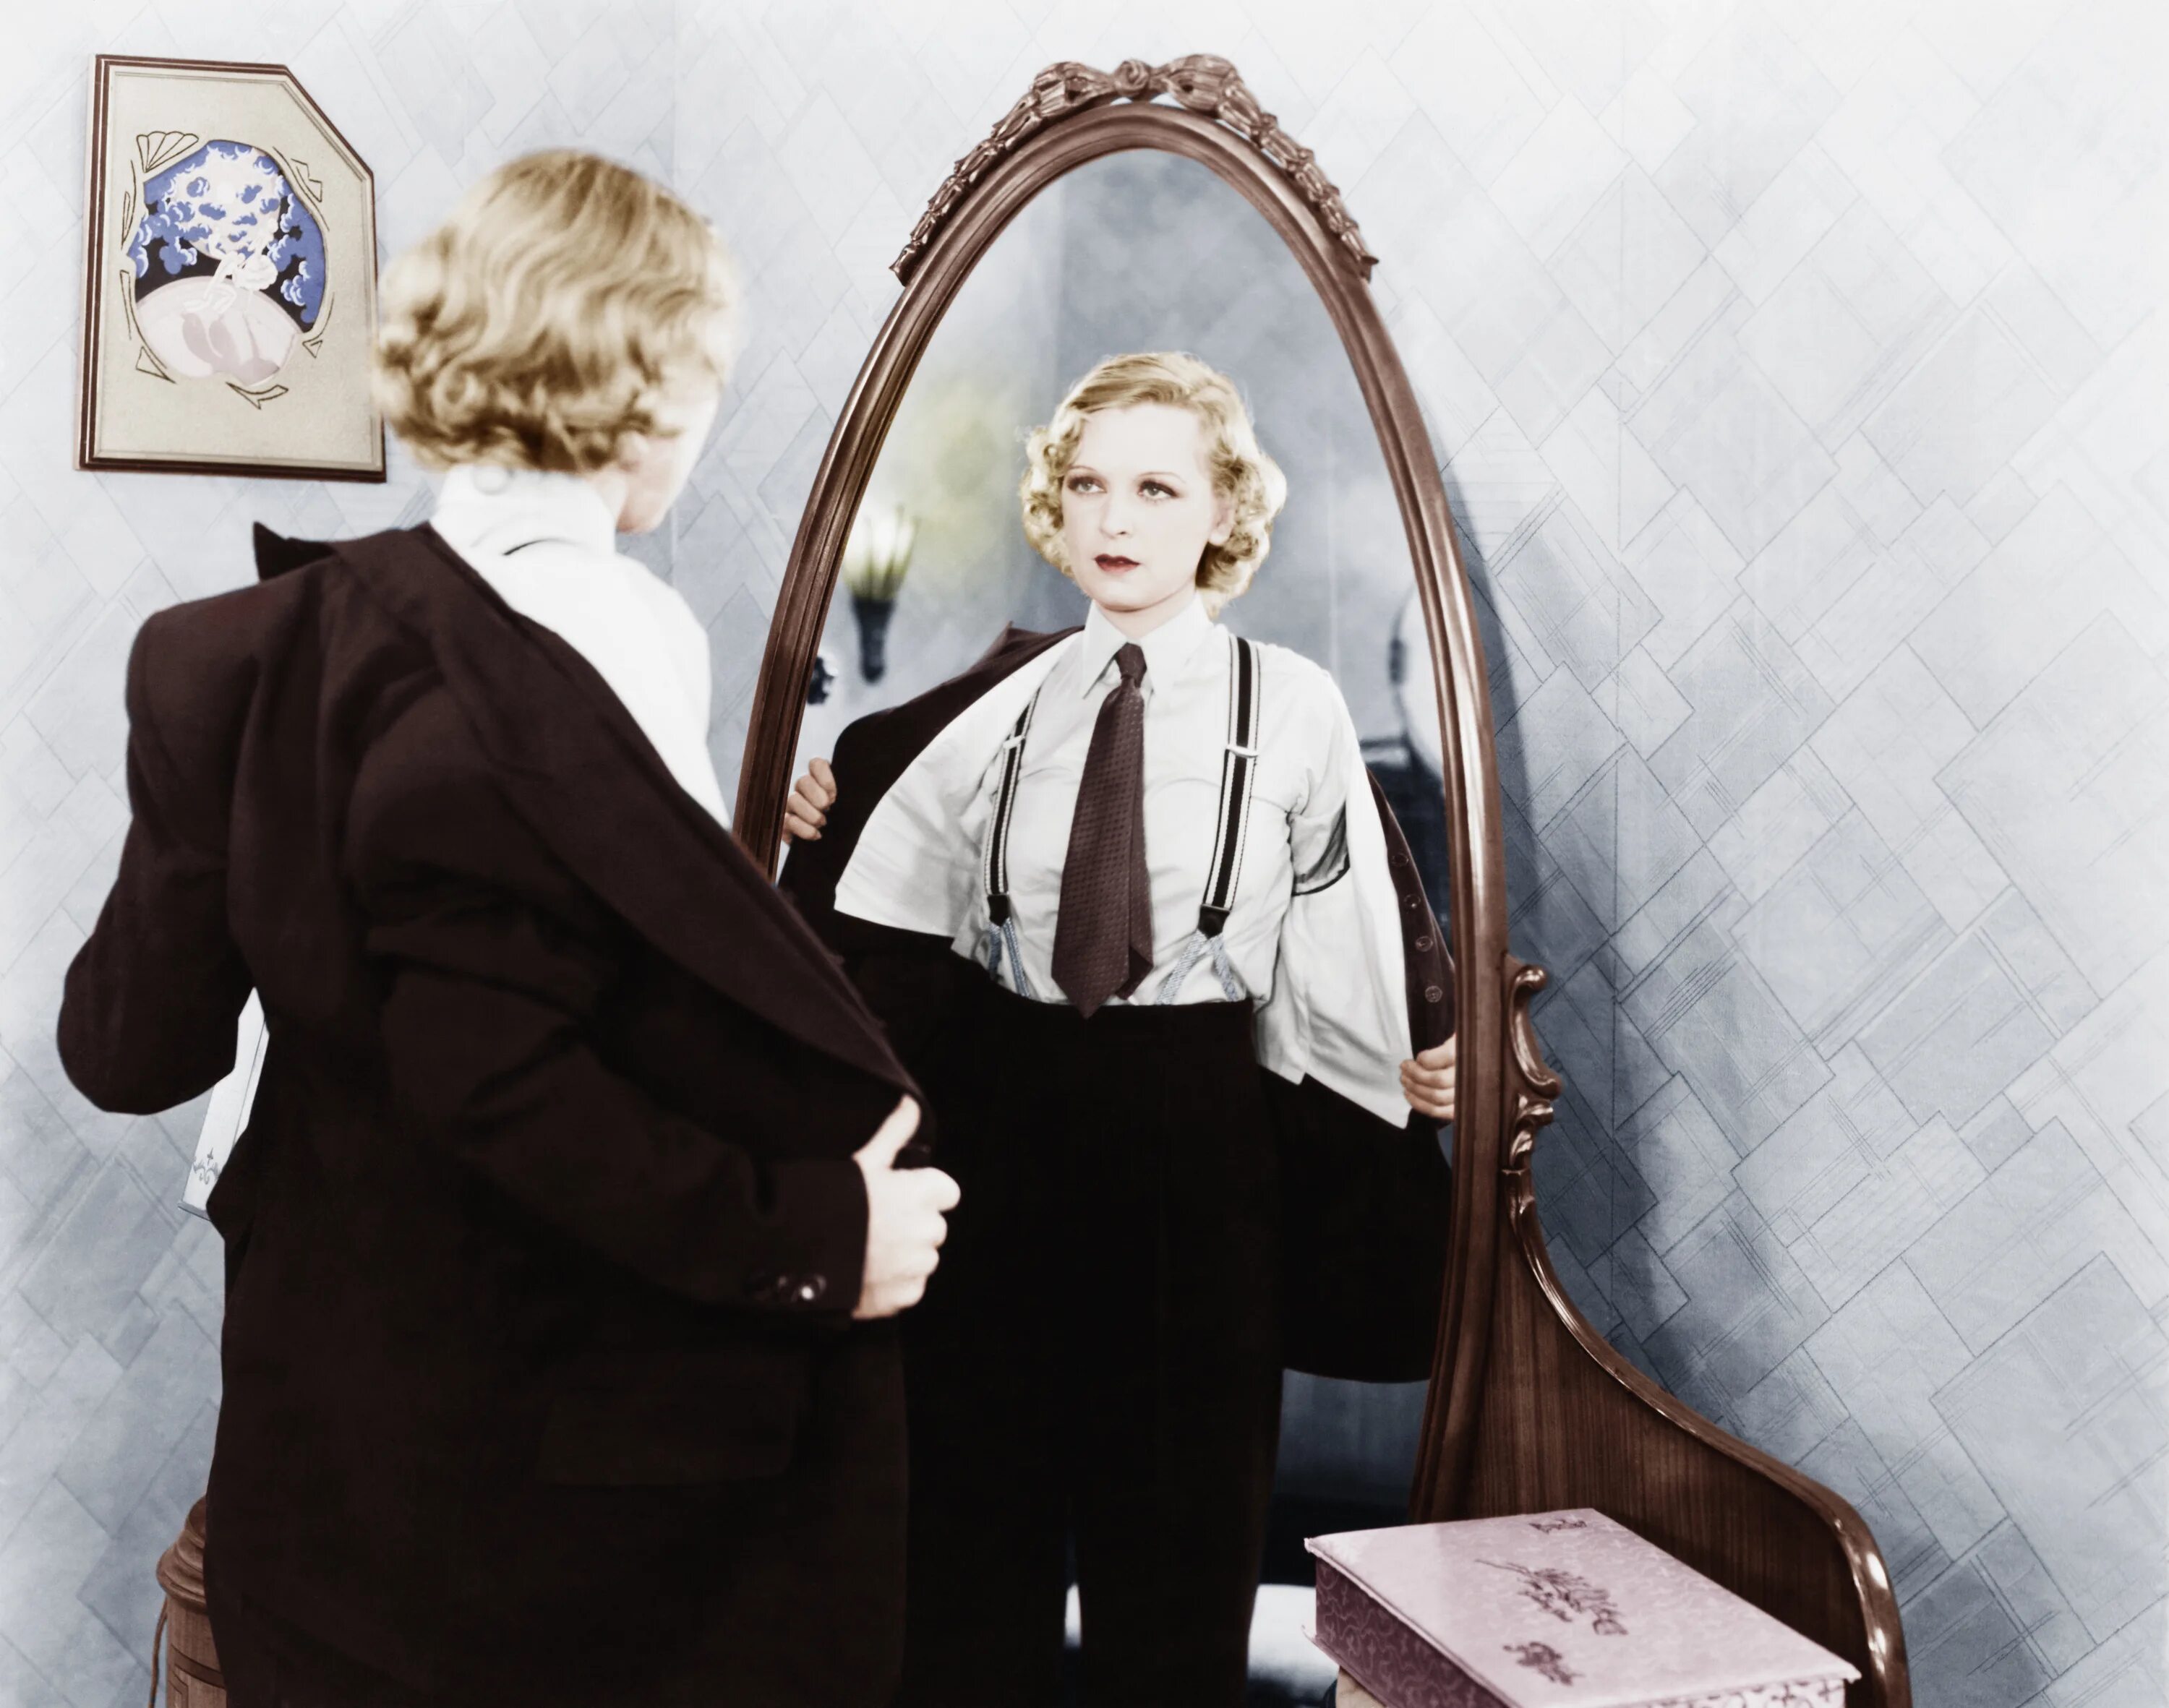 Перед зеркалом. Человек в зеркале. Женщина в зеркале. Отражение в зеркале. Шекспир женщина переодевается мужчиной